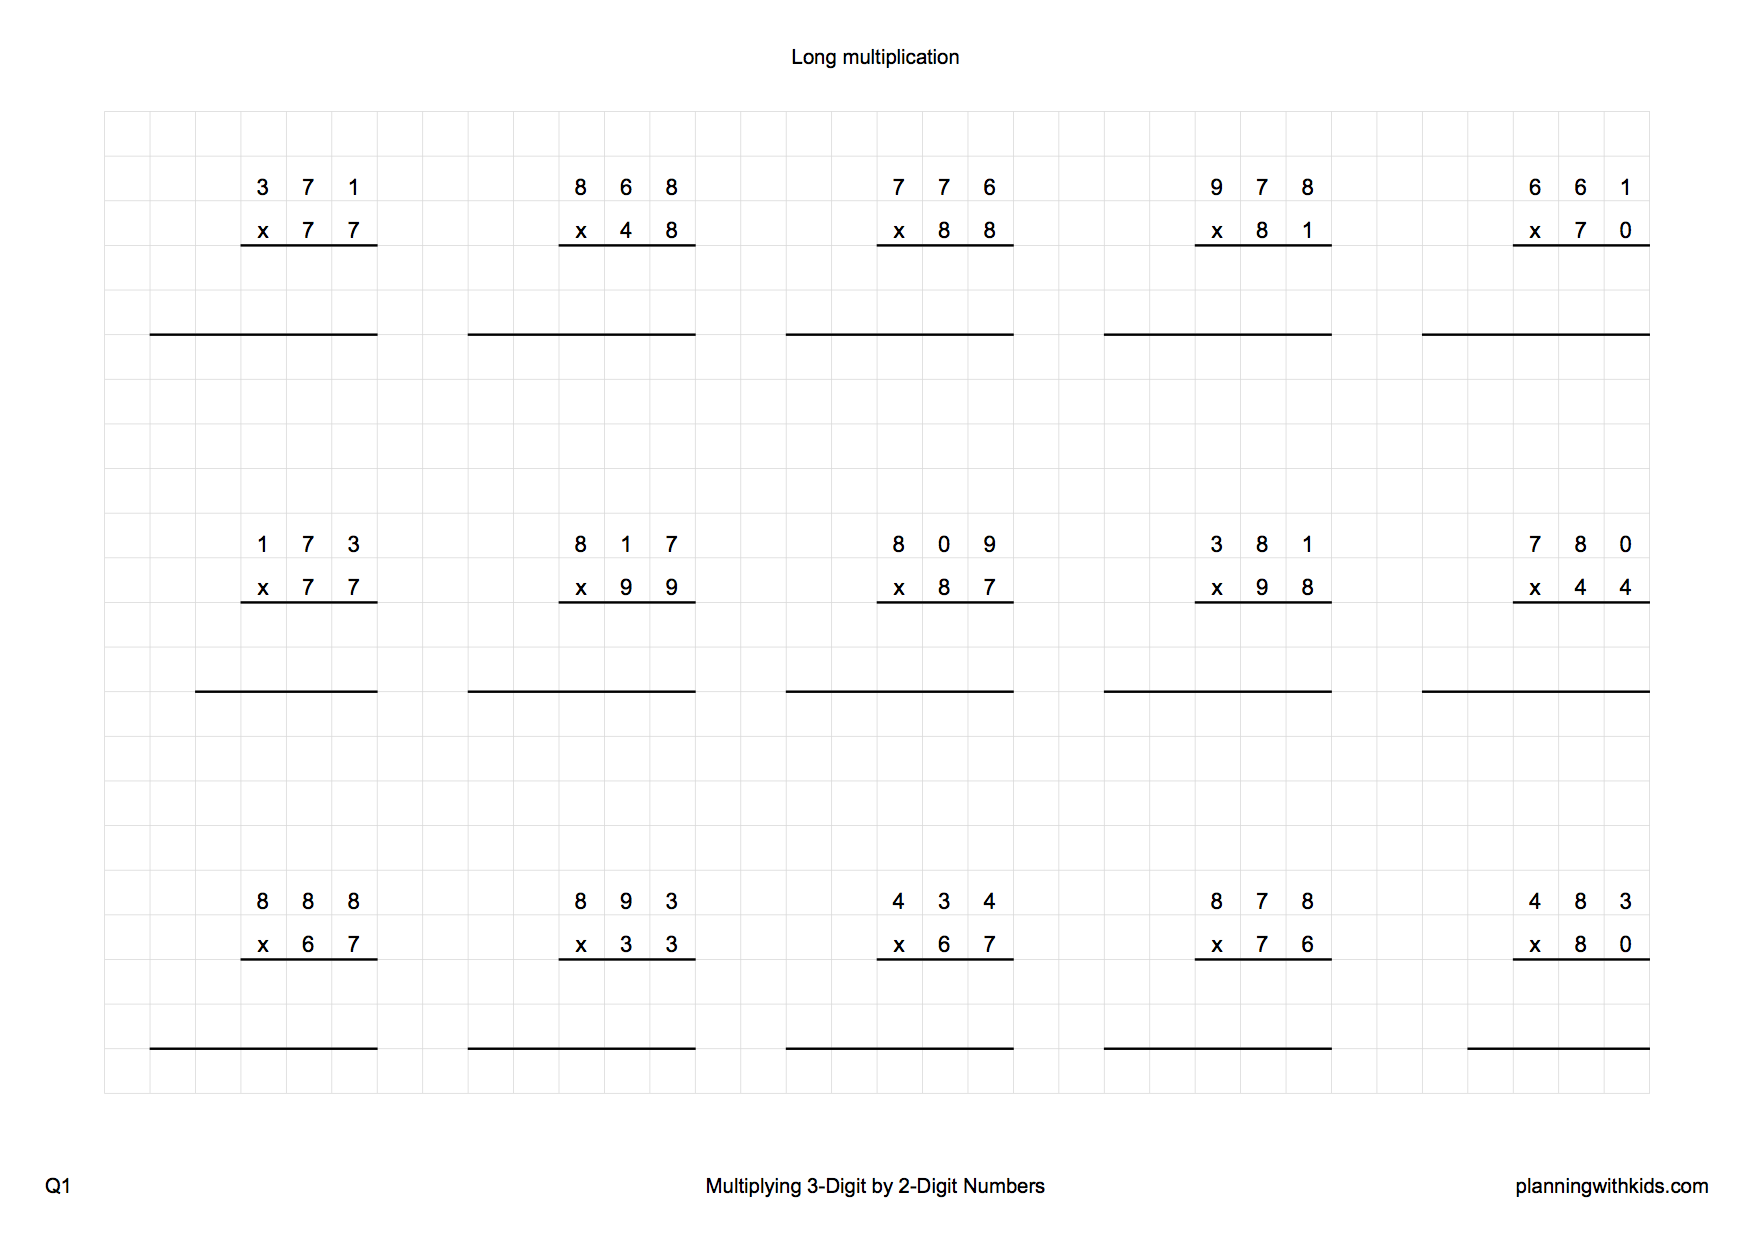 multiplying-2-digit-by-1-digit-numbers-a-long-multiplication-worksheet